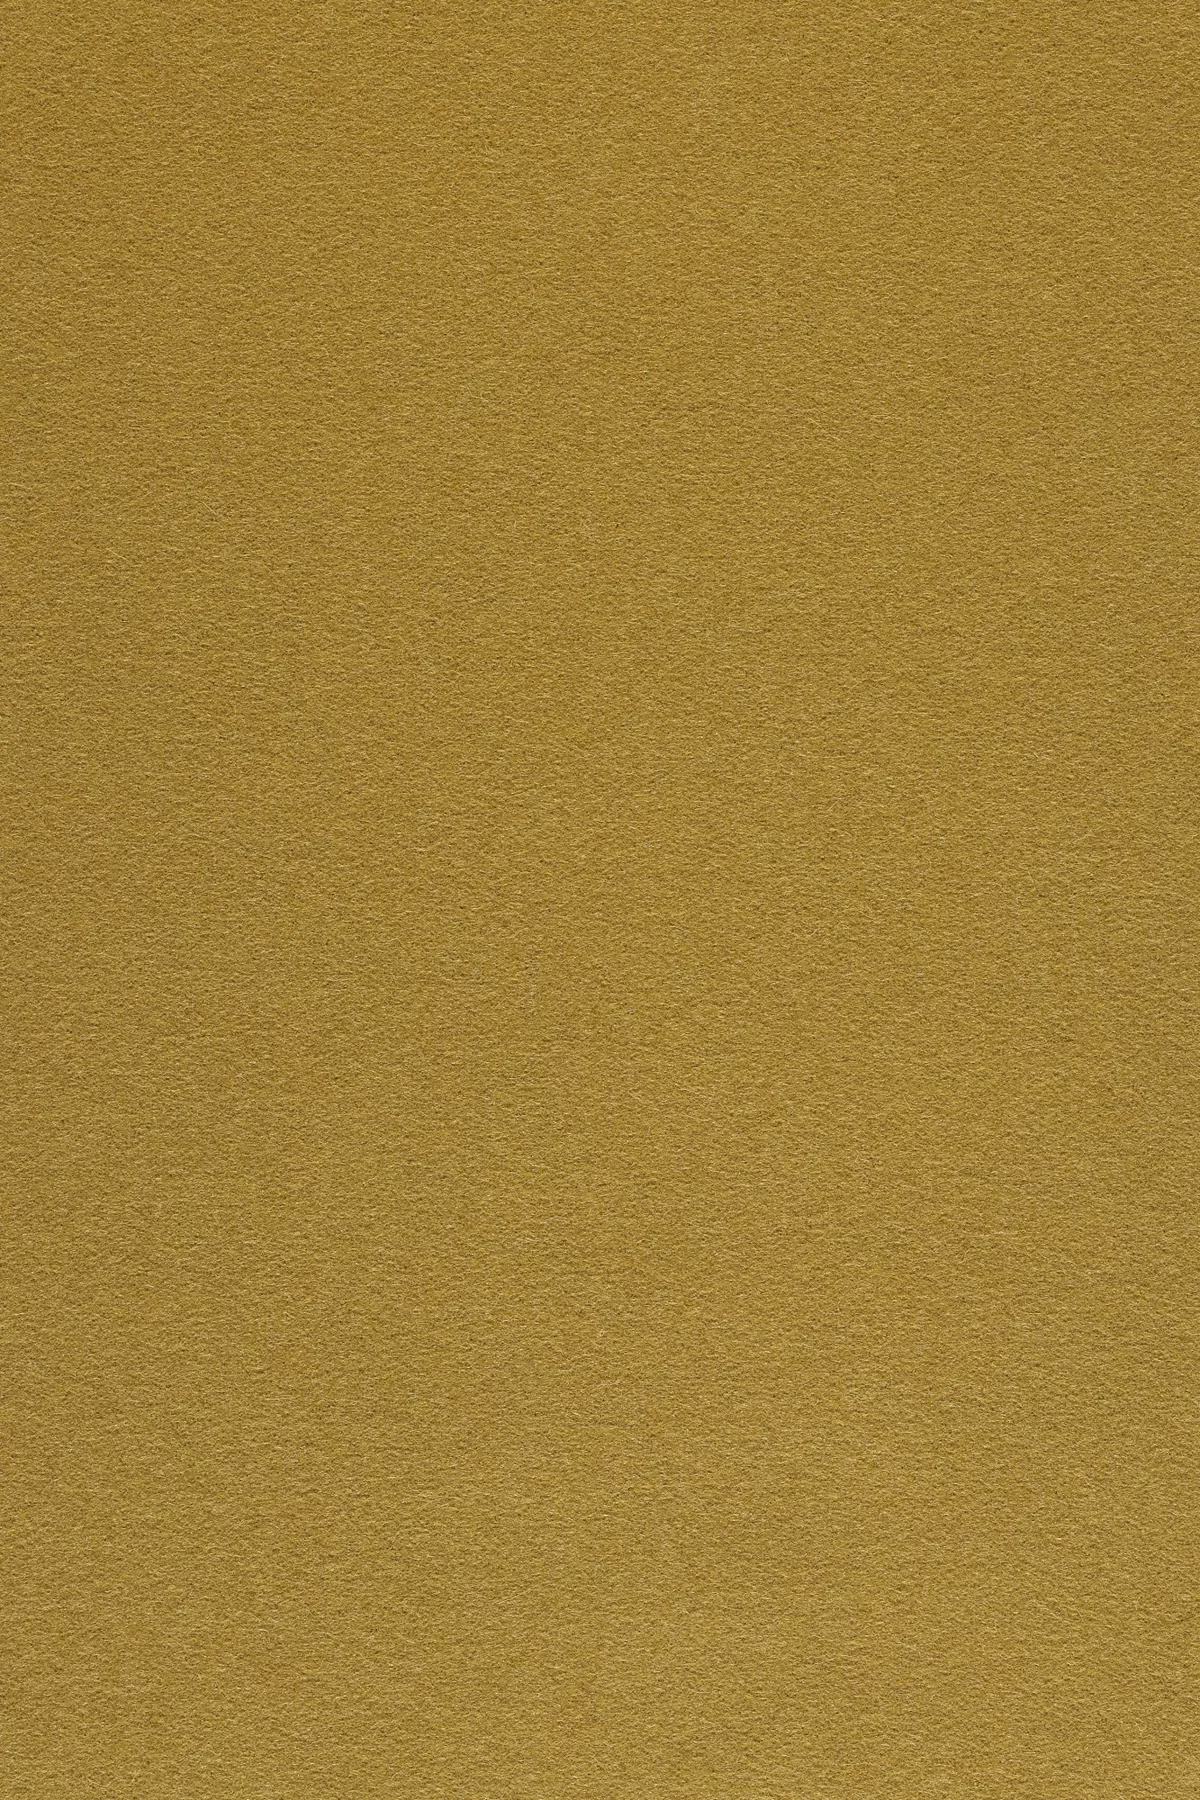 Fabric sample Divina 3 246 brown